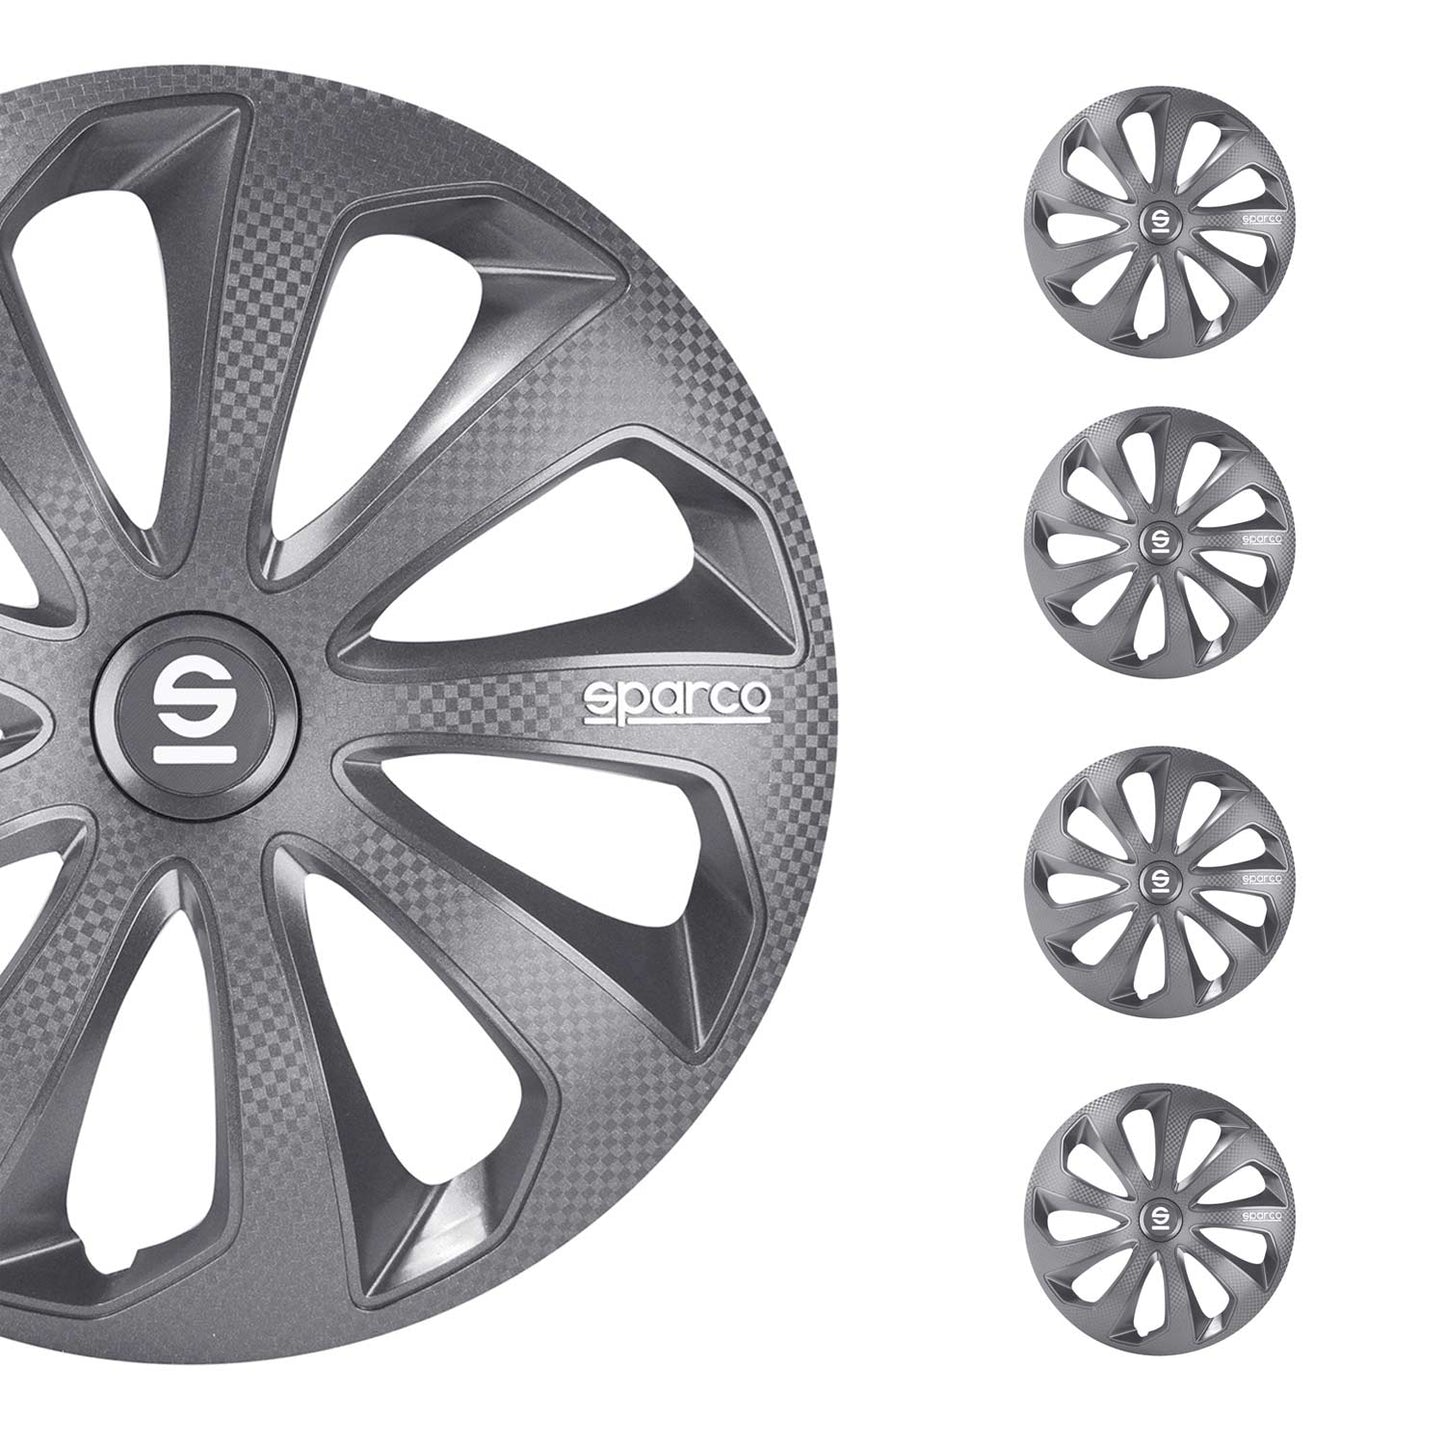 OMAC 14" Sparco Sicilia Wheel Covers Hubcaps Gray Carbon 4 Pcs 96SPC1474GRC